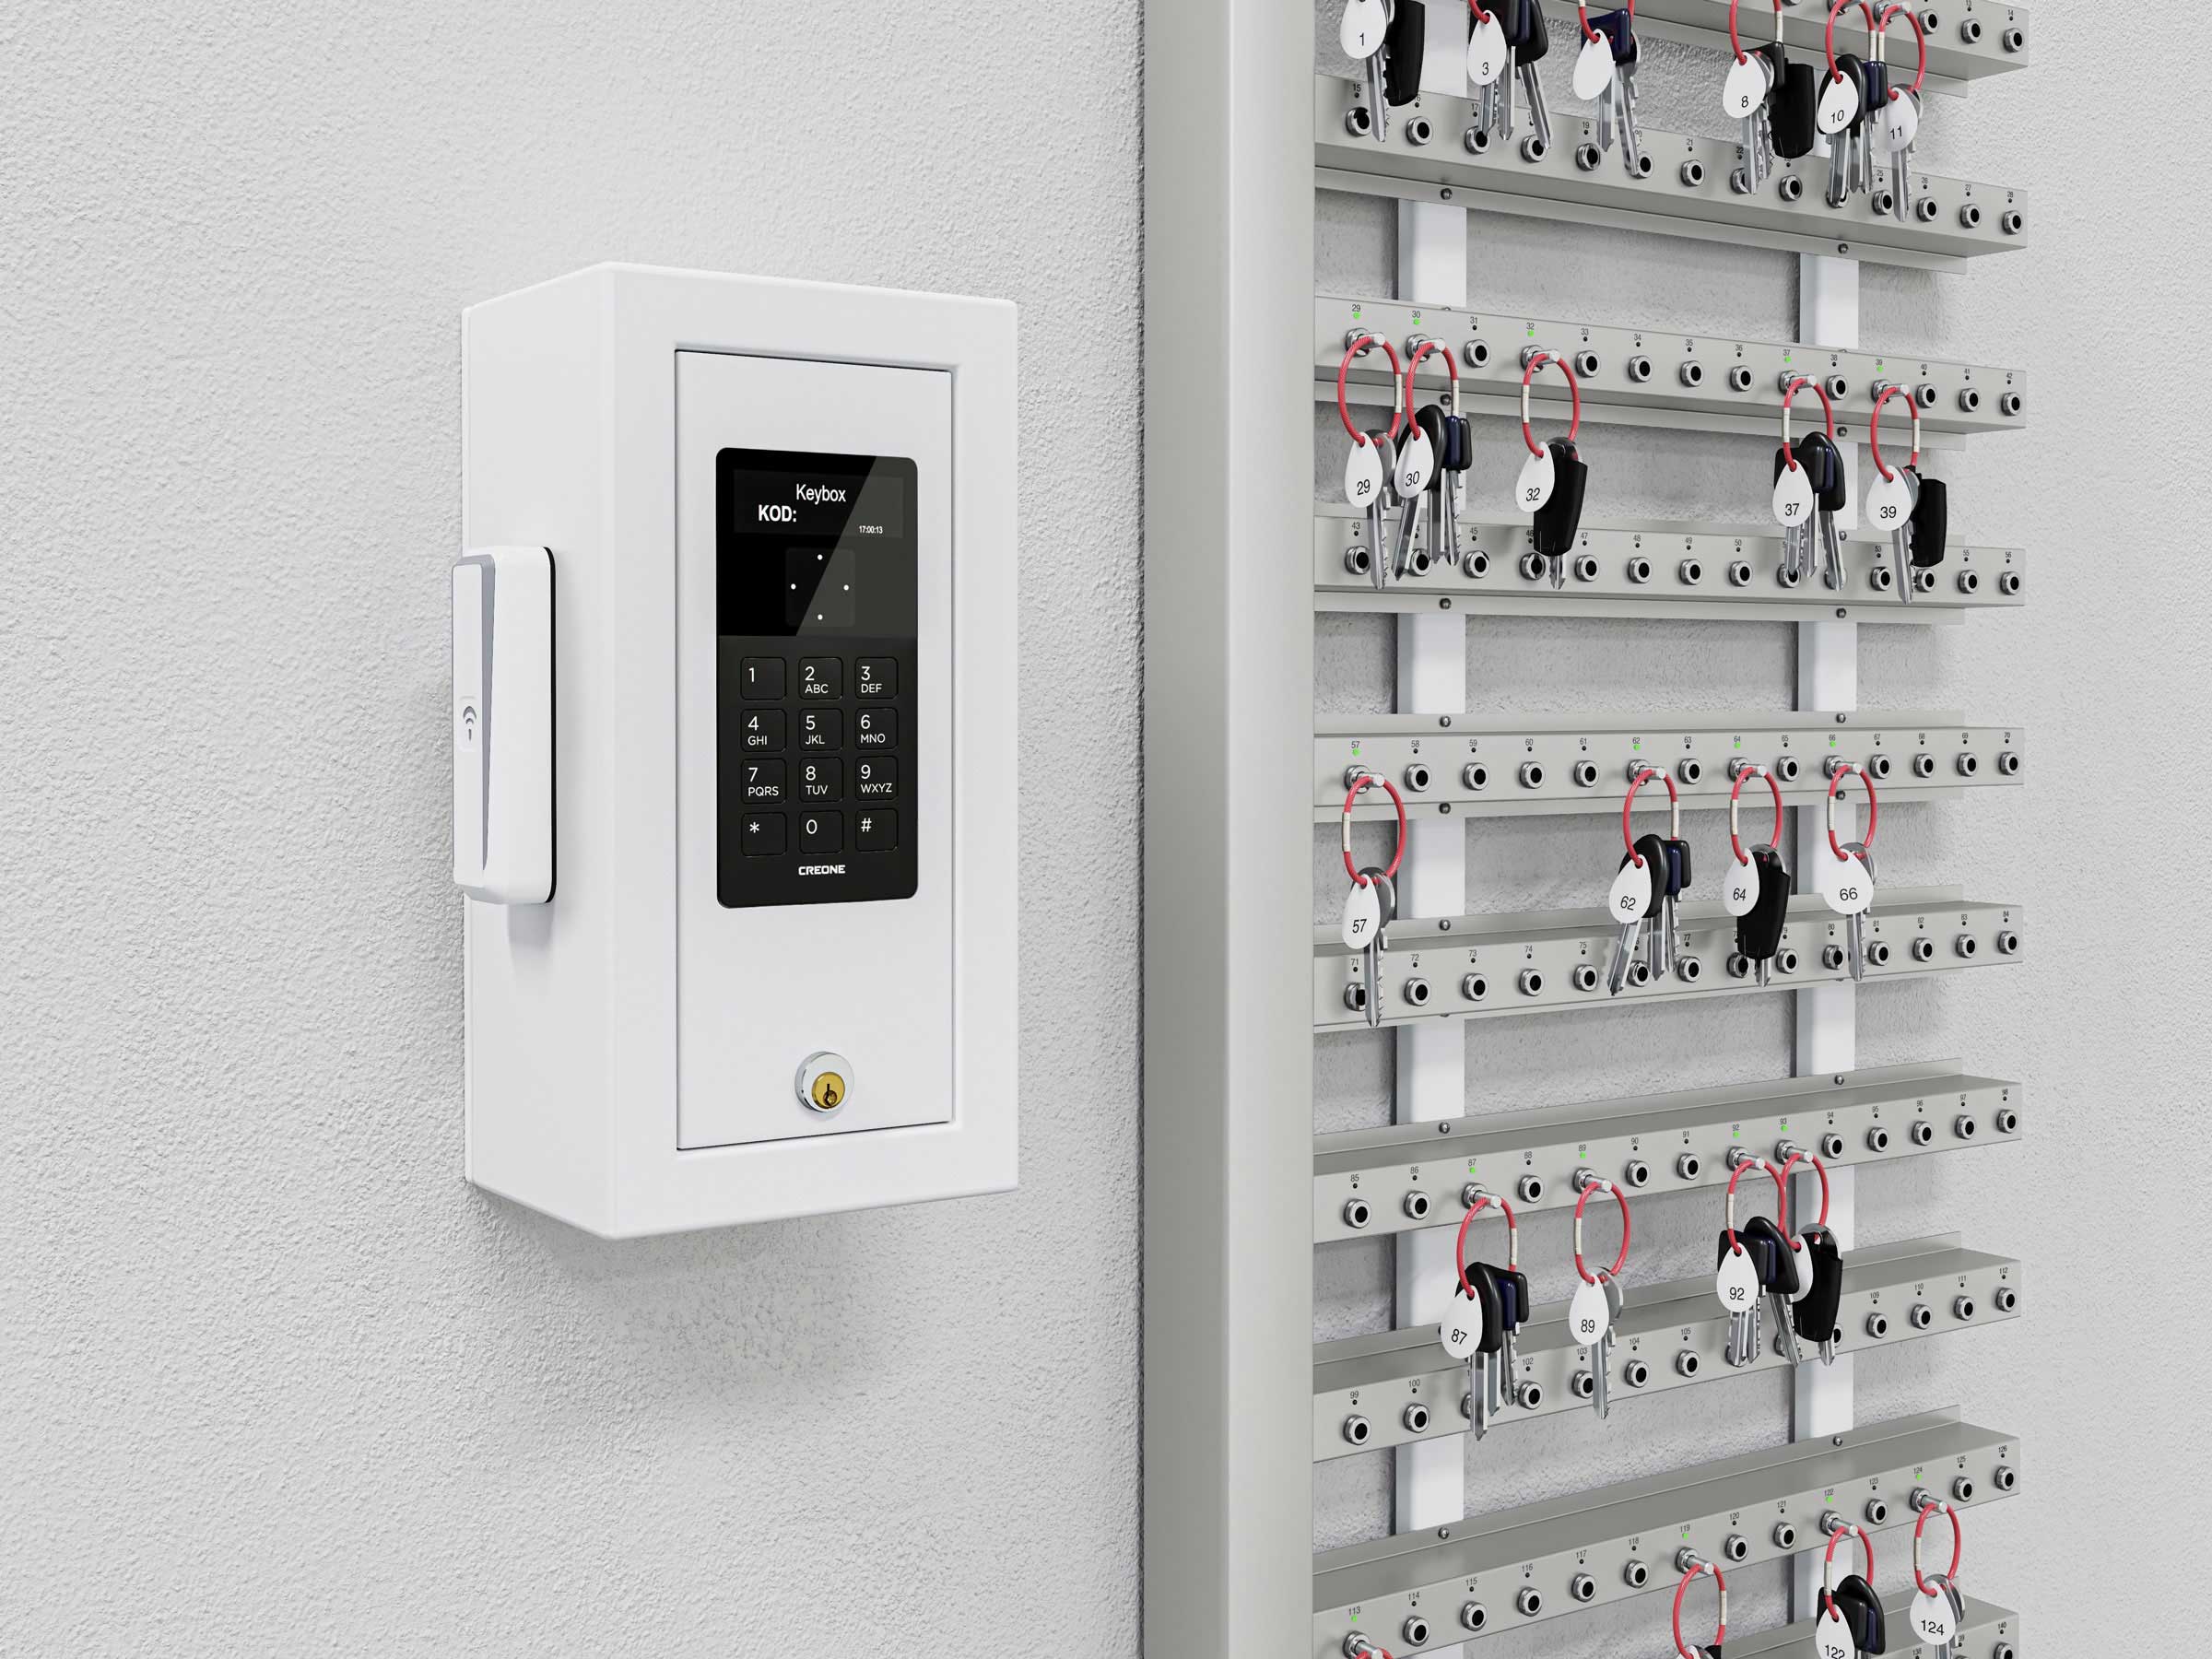 Intelligenta nyckelister som är monterade på vägg som ett alternativ till nyckelskåp.